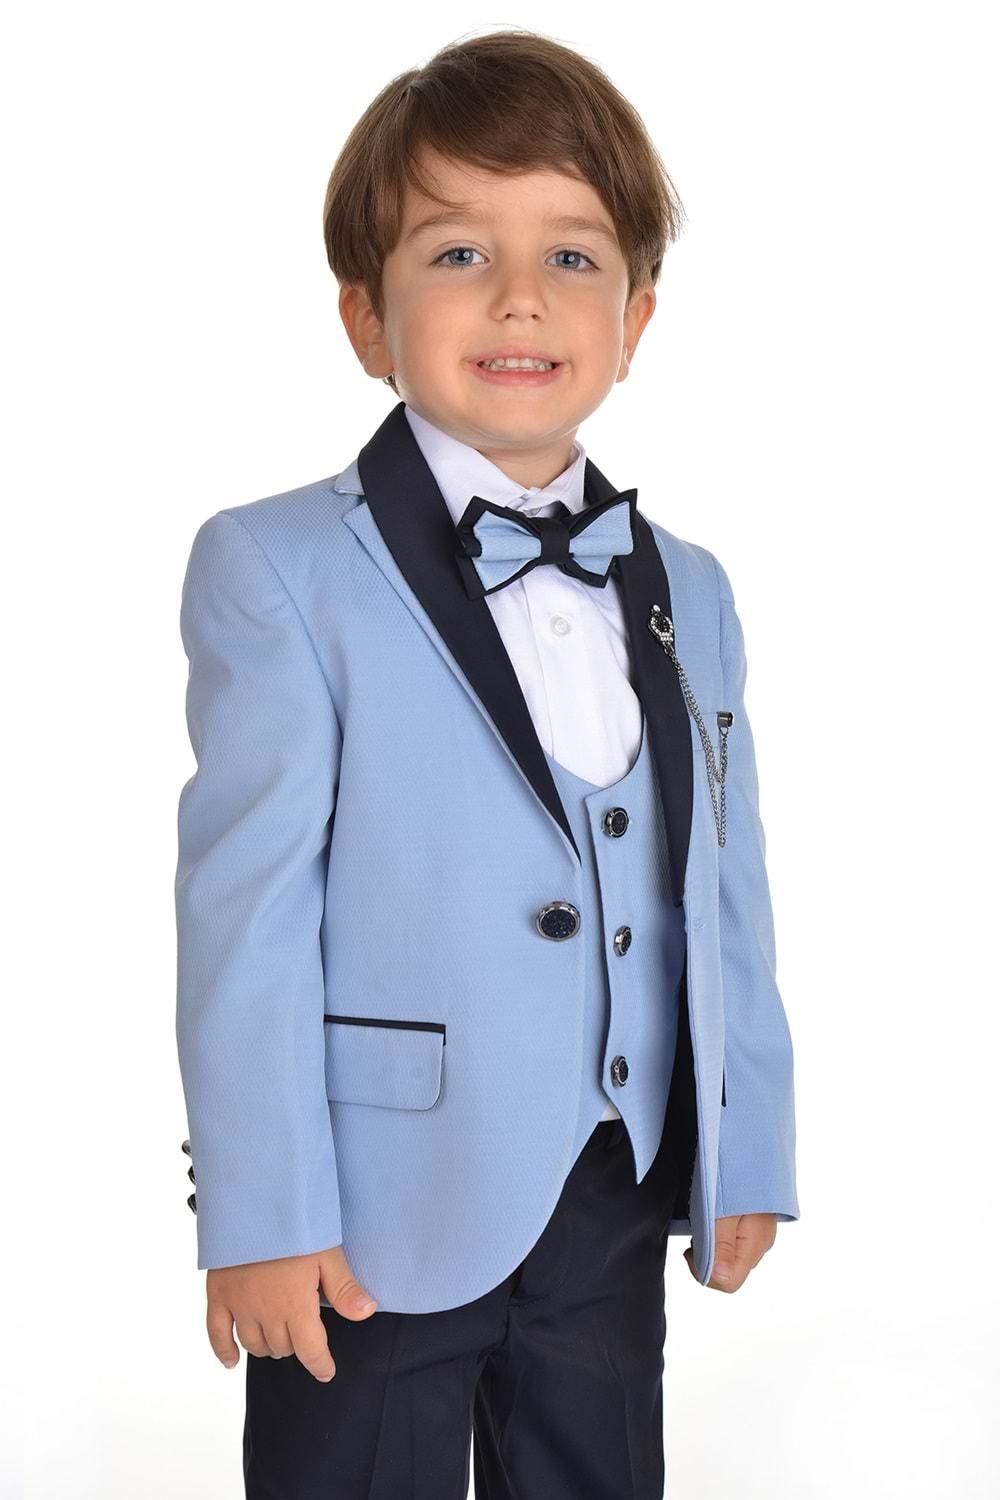 Ceketli Yelekli Erkek Çocuk Damatlık Takım Elbise